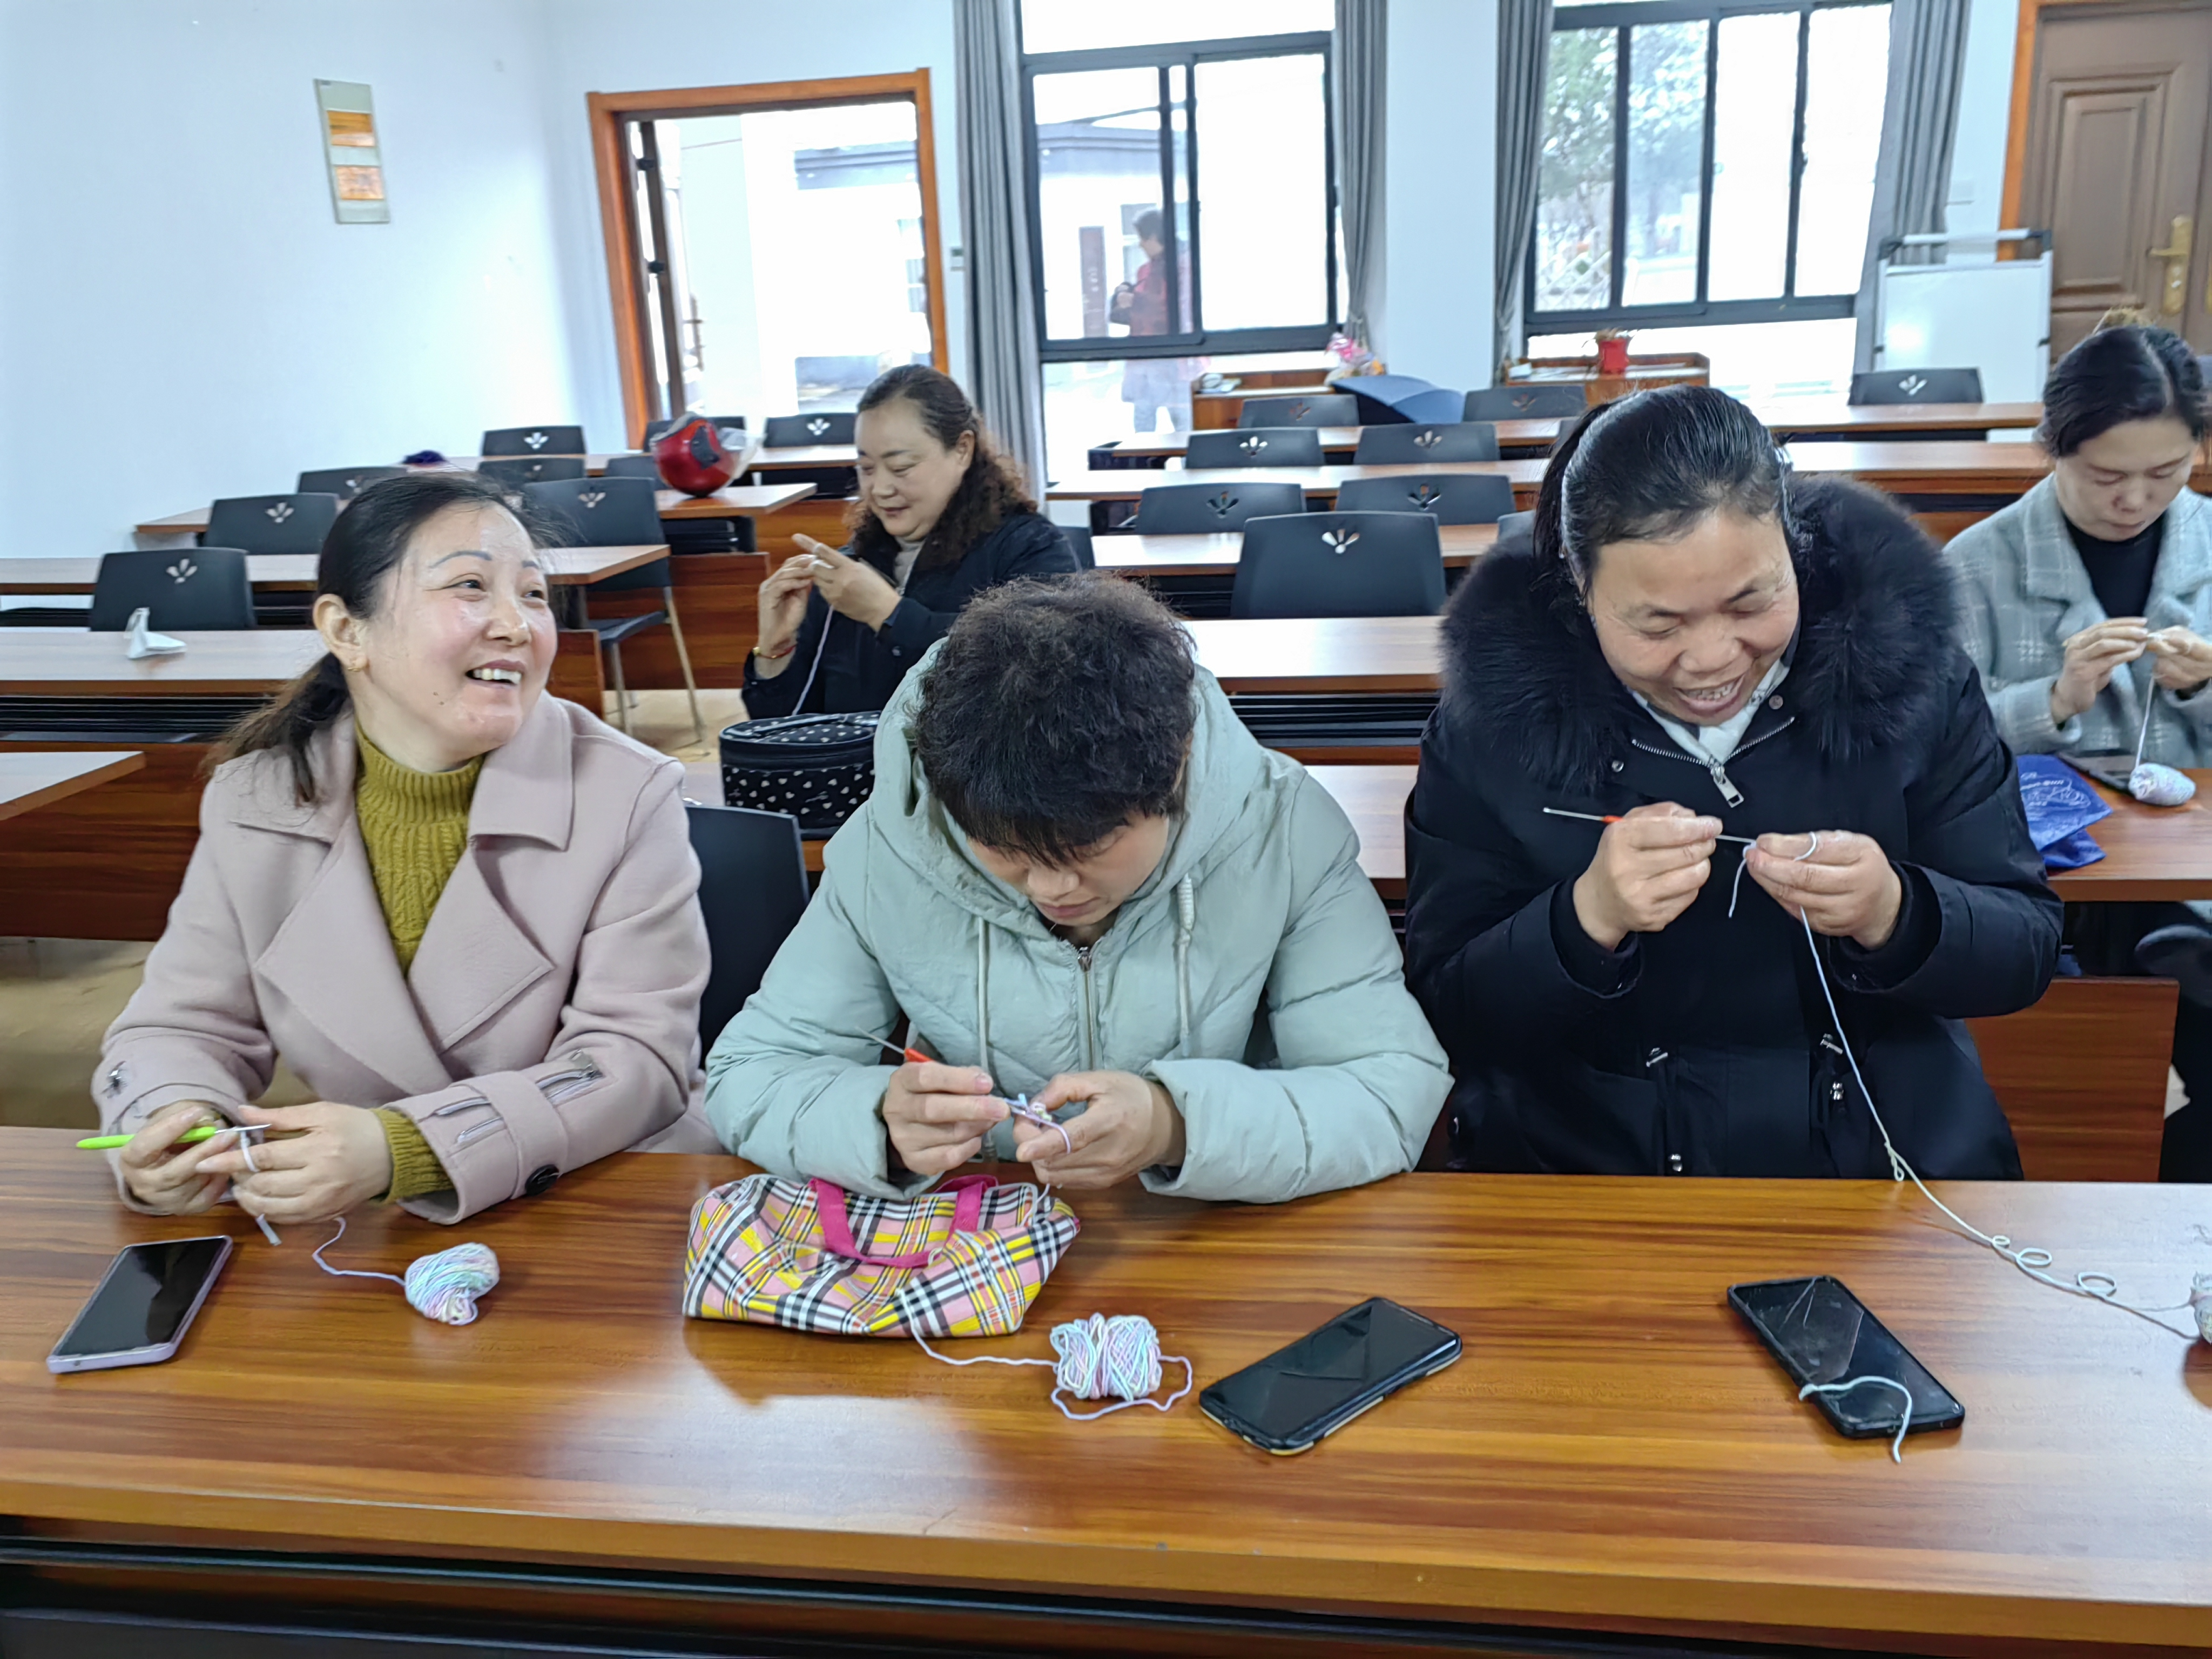 江宁周村社区就业服务站把大龄就业人员组织起来做手工饰品在附近景点销售。